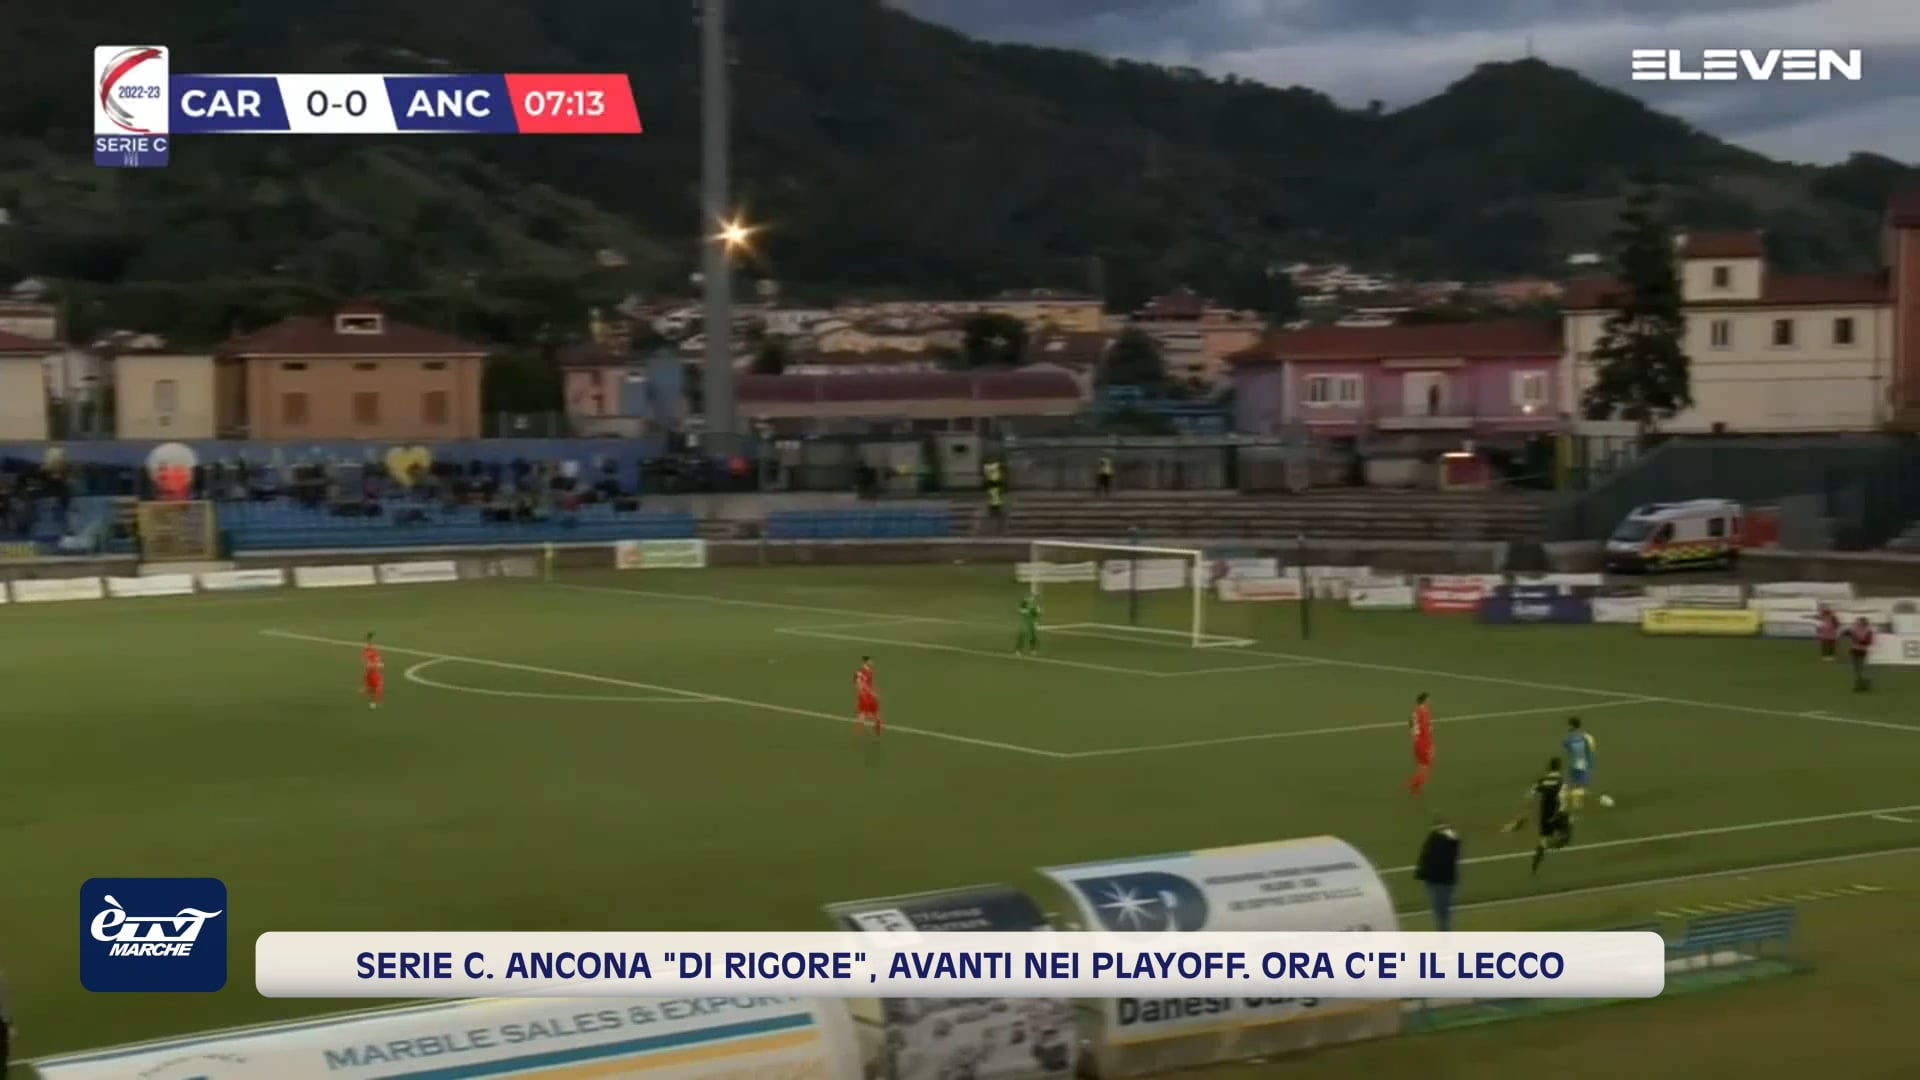 Serie C. Ancona 'di rigore', avanti nei playoff. Ora c'è il Lecco - VIDEO